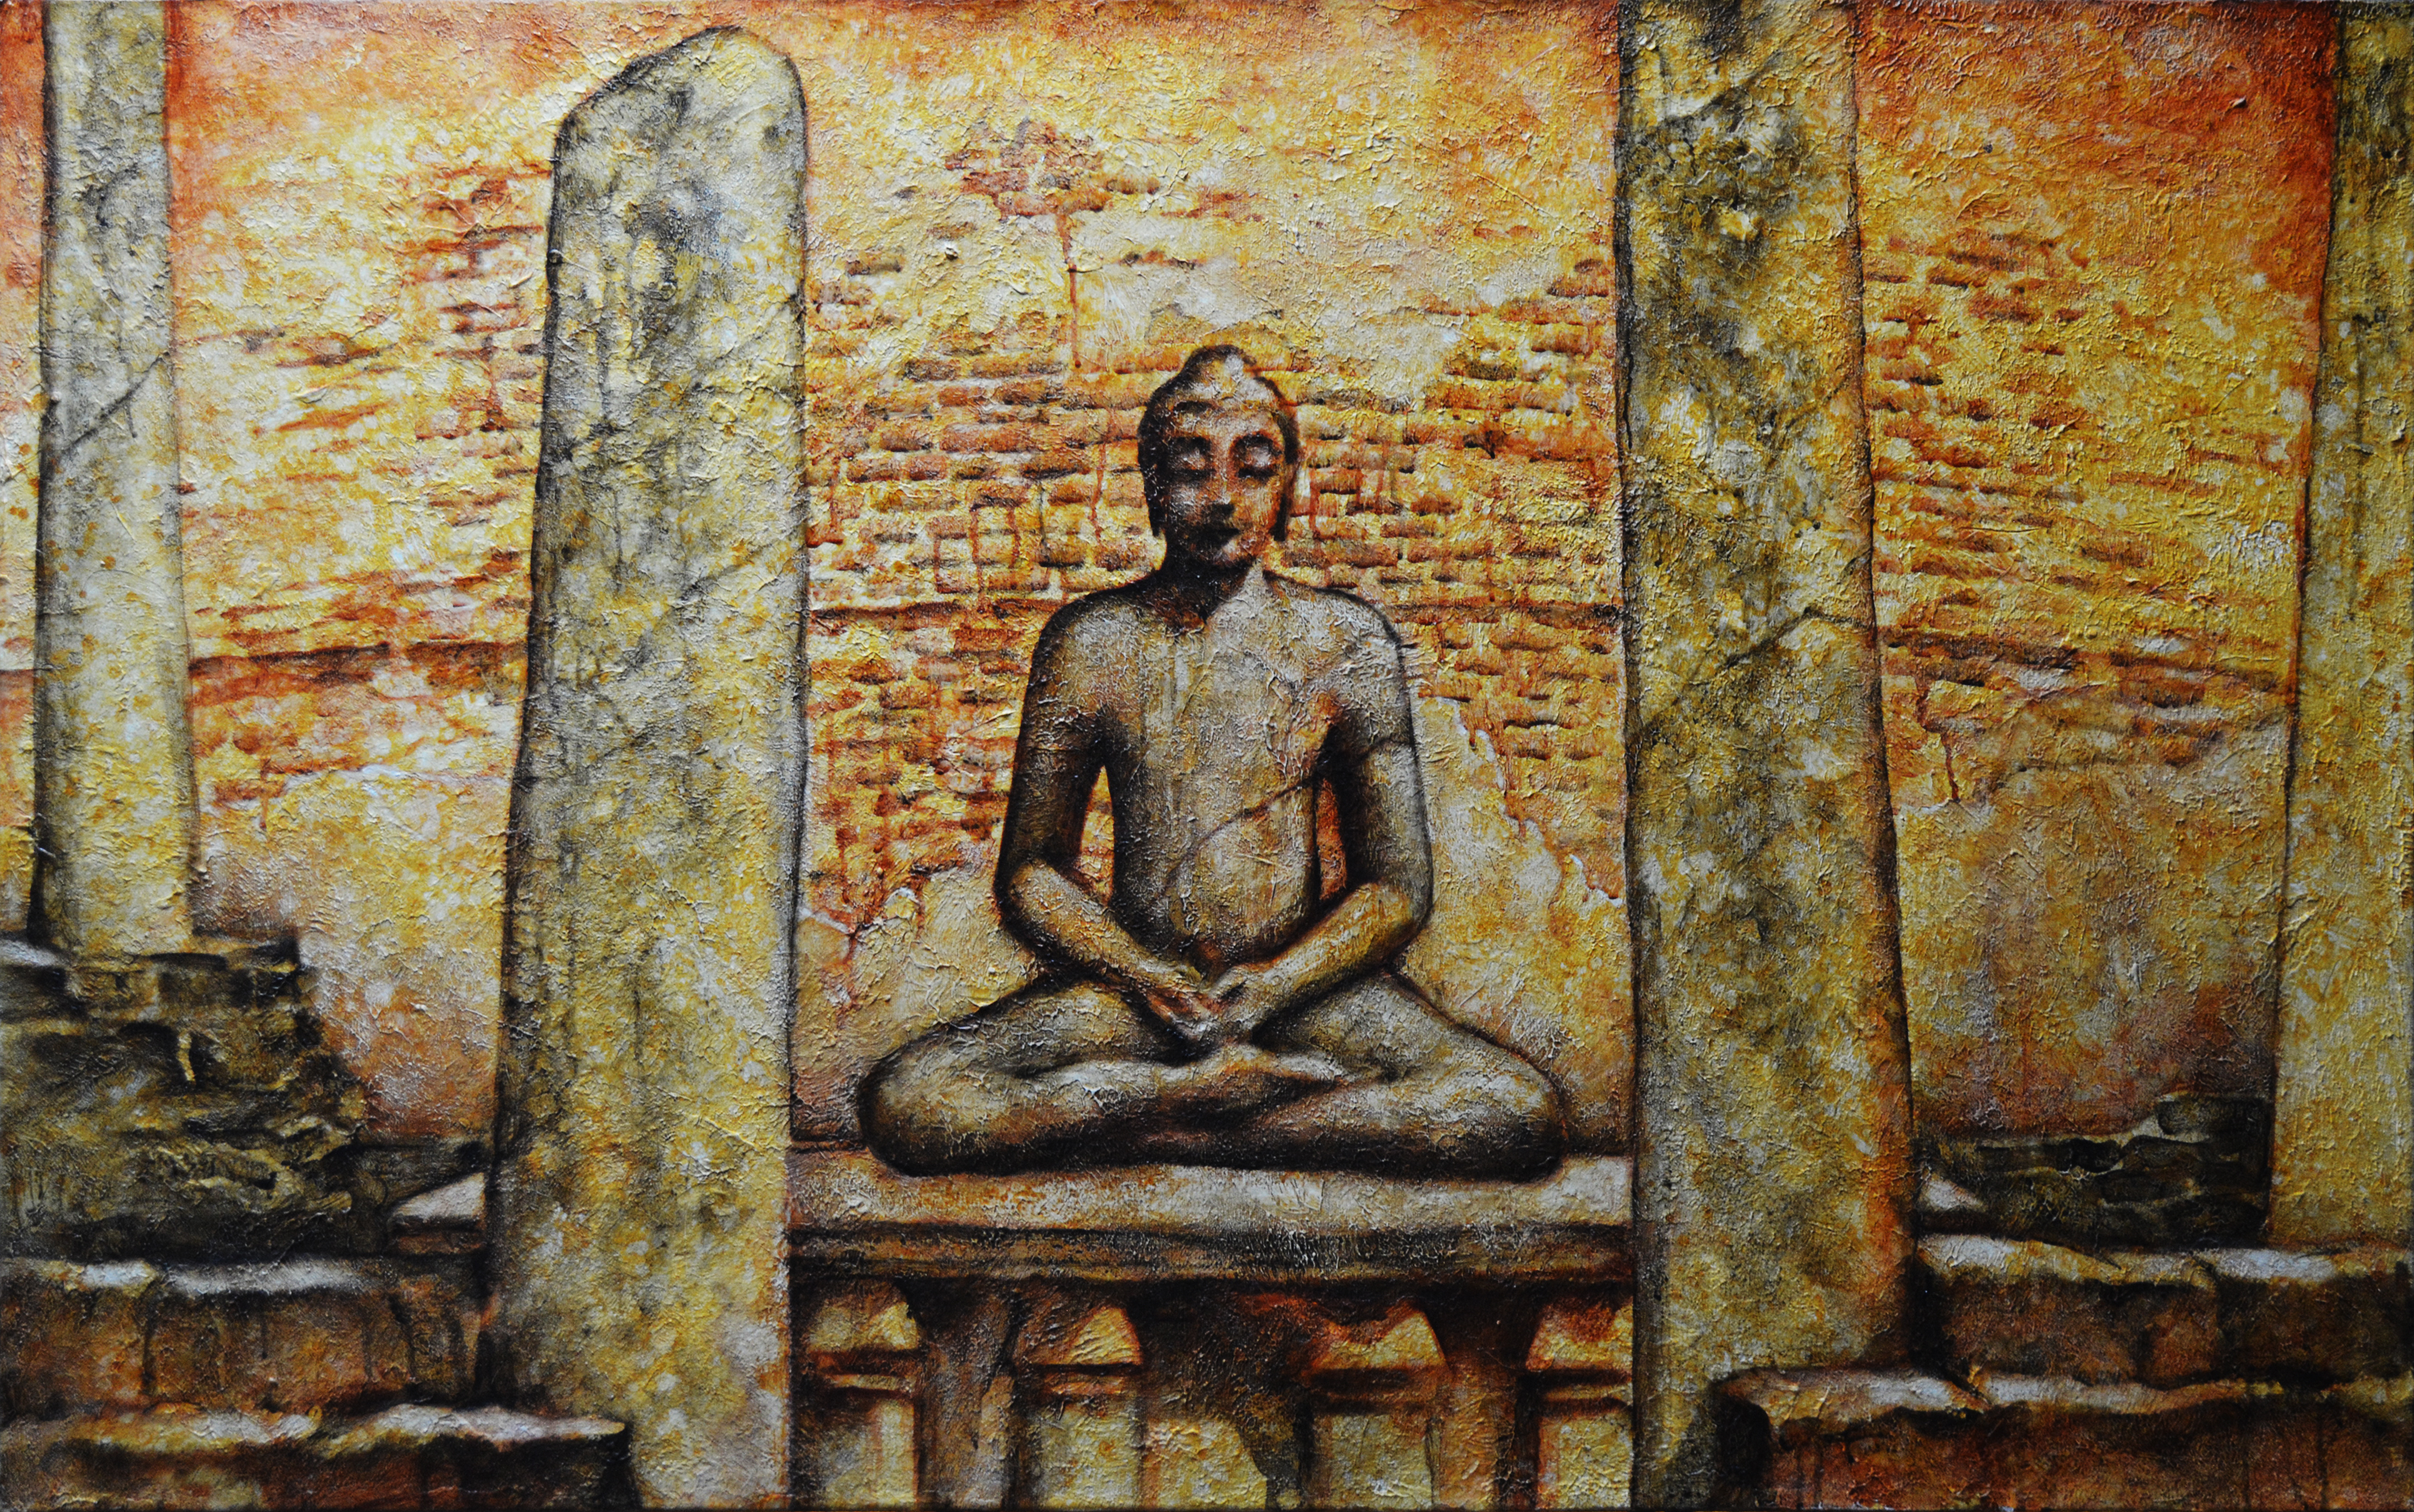 Buddha Amongst the Ruins